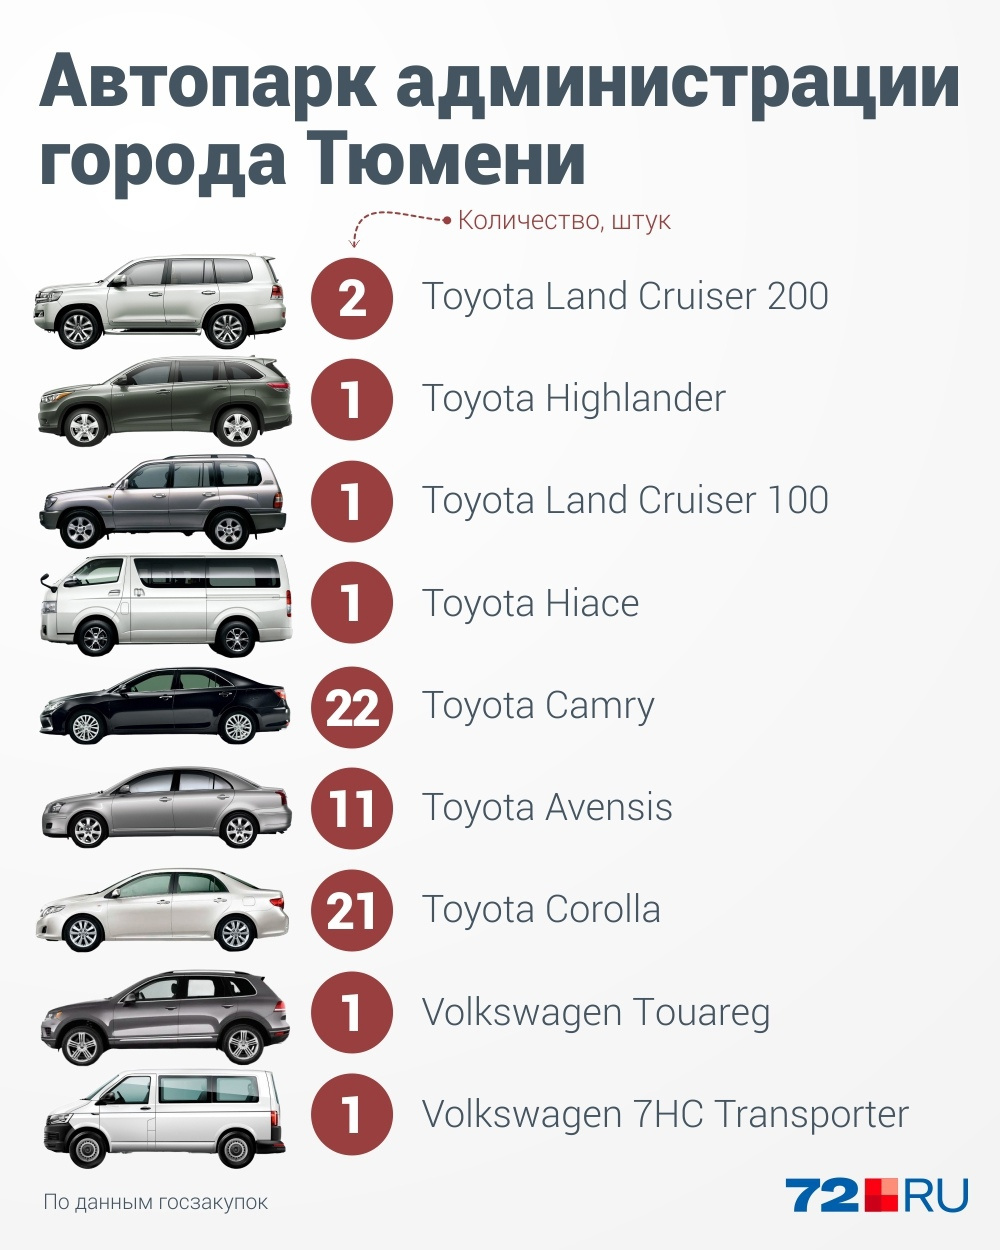 Любимая марка тюменских чиновников — Toyota